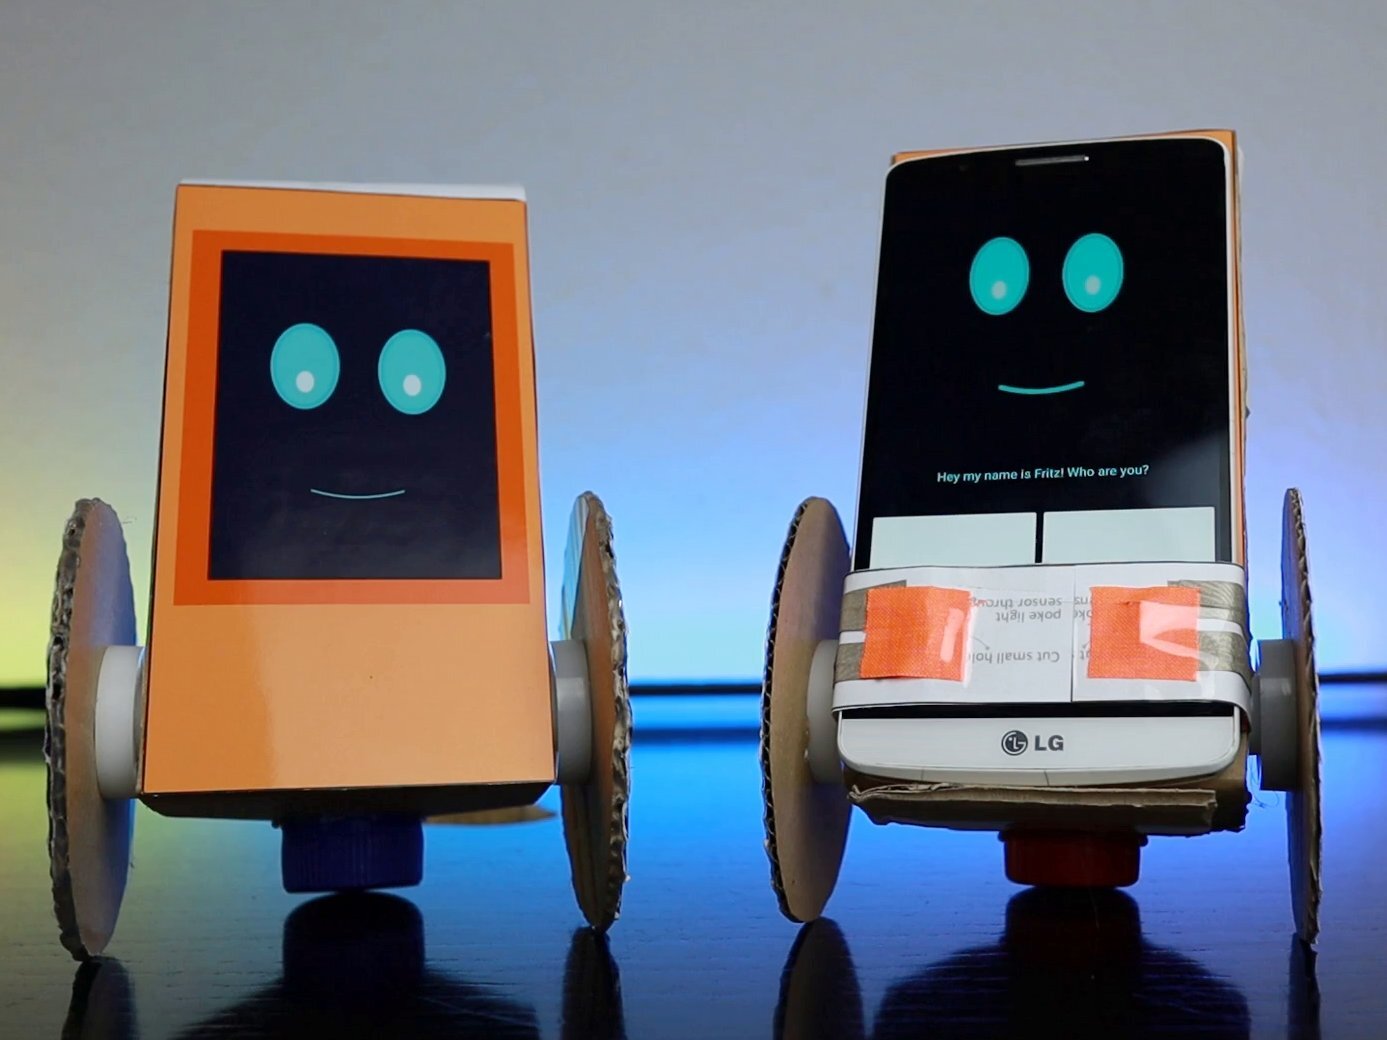 https://images.squarespace-cdn.com/content/v1/5e0e1aed65066232ebd5e14d/1612564214400-TRCDTOKRML3E0WMW2JPL/Easy+Robot+And+Smartphone+Robot